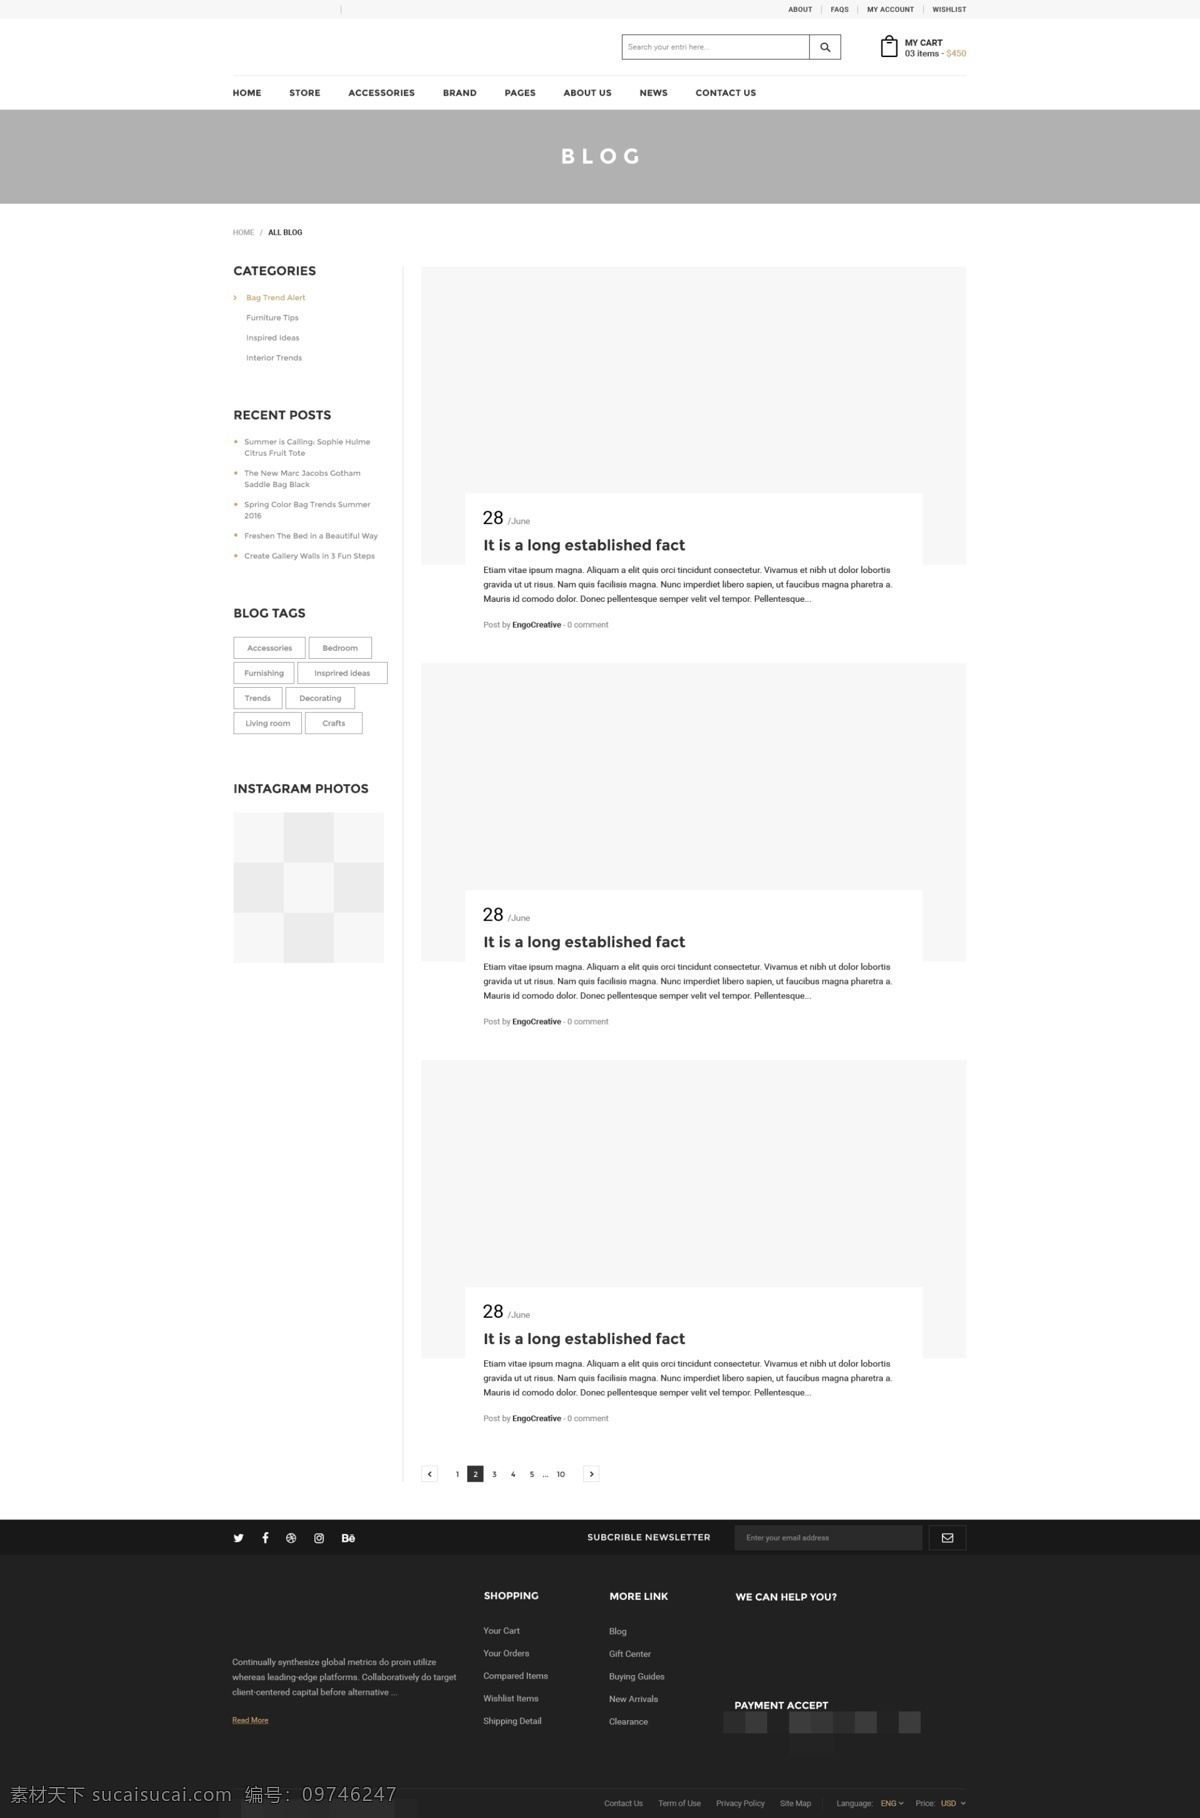 创意 机构 投资 组合 博客 页面 模板 简洁 网页ui ui设计 欧美 psd格式 黑白灰 博客页面 左侧栏 国外模板 高档网页 高档网站